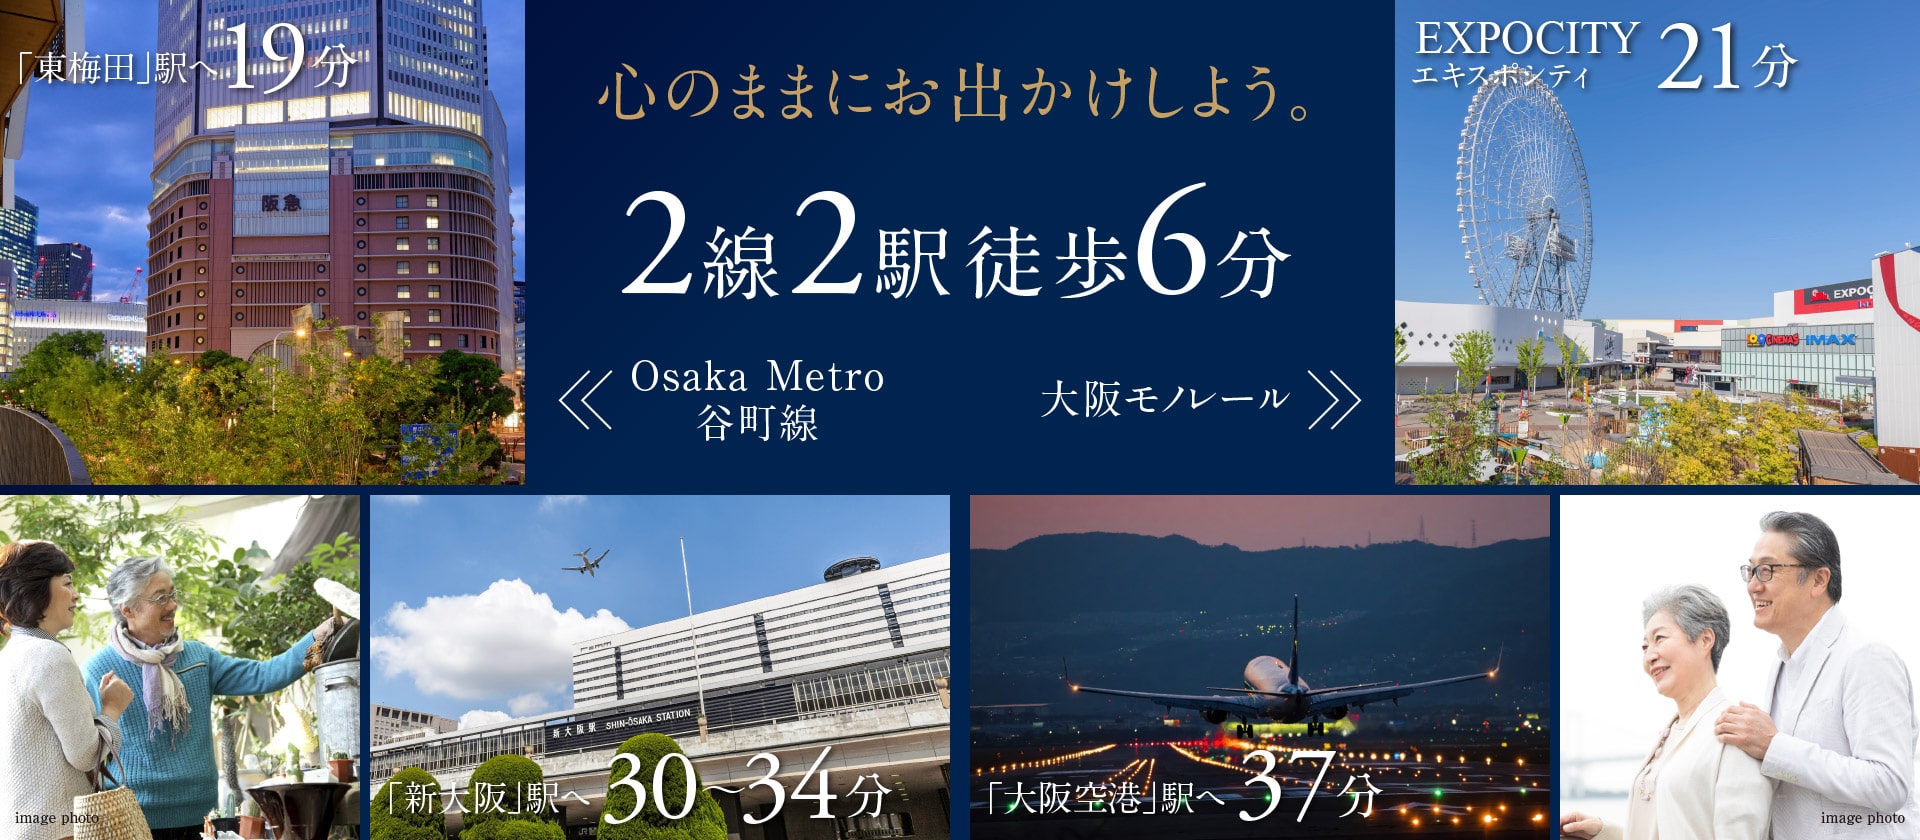 心のままにお出かけしよう。Osaka Metro谷町線｢大日｣駅徒歩6分・大阪モノレール｢大日｣駅徒歩6分